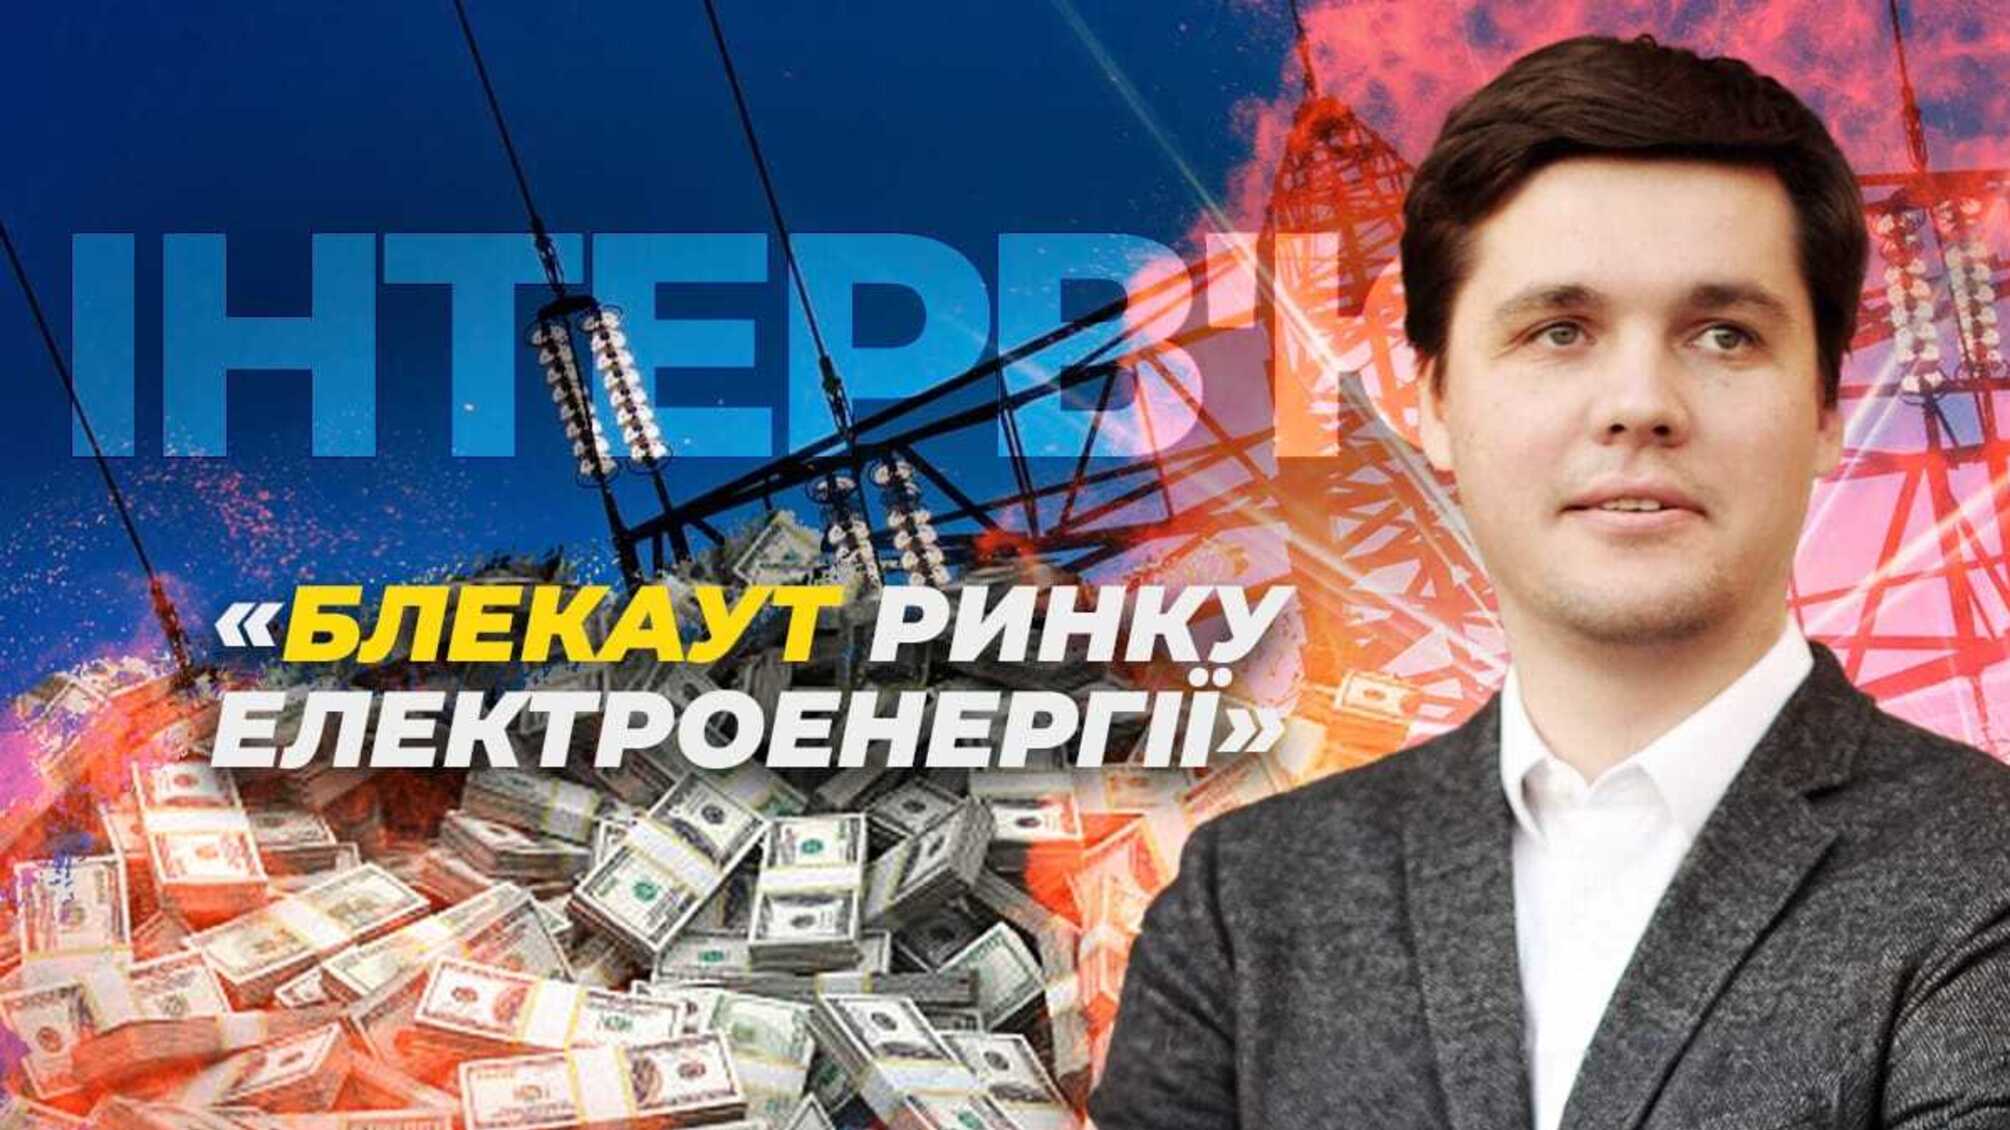 Александр Визир о причинах возможного 'блэкаута' рынка электроэнергии в Украине